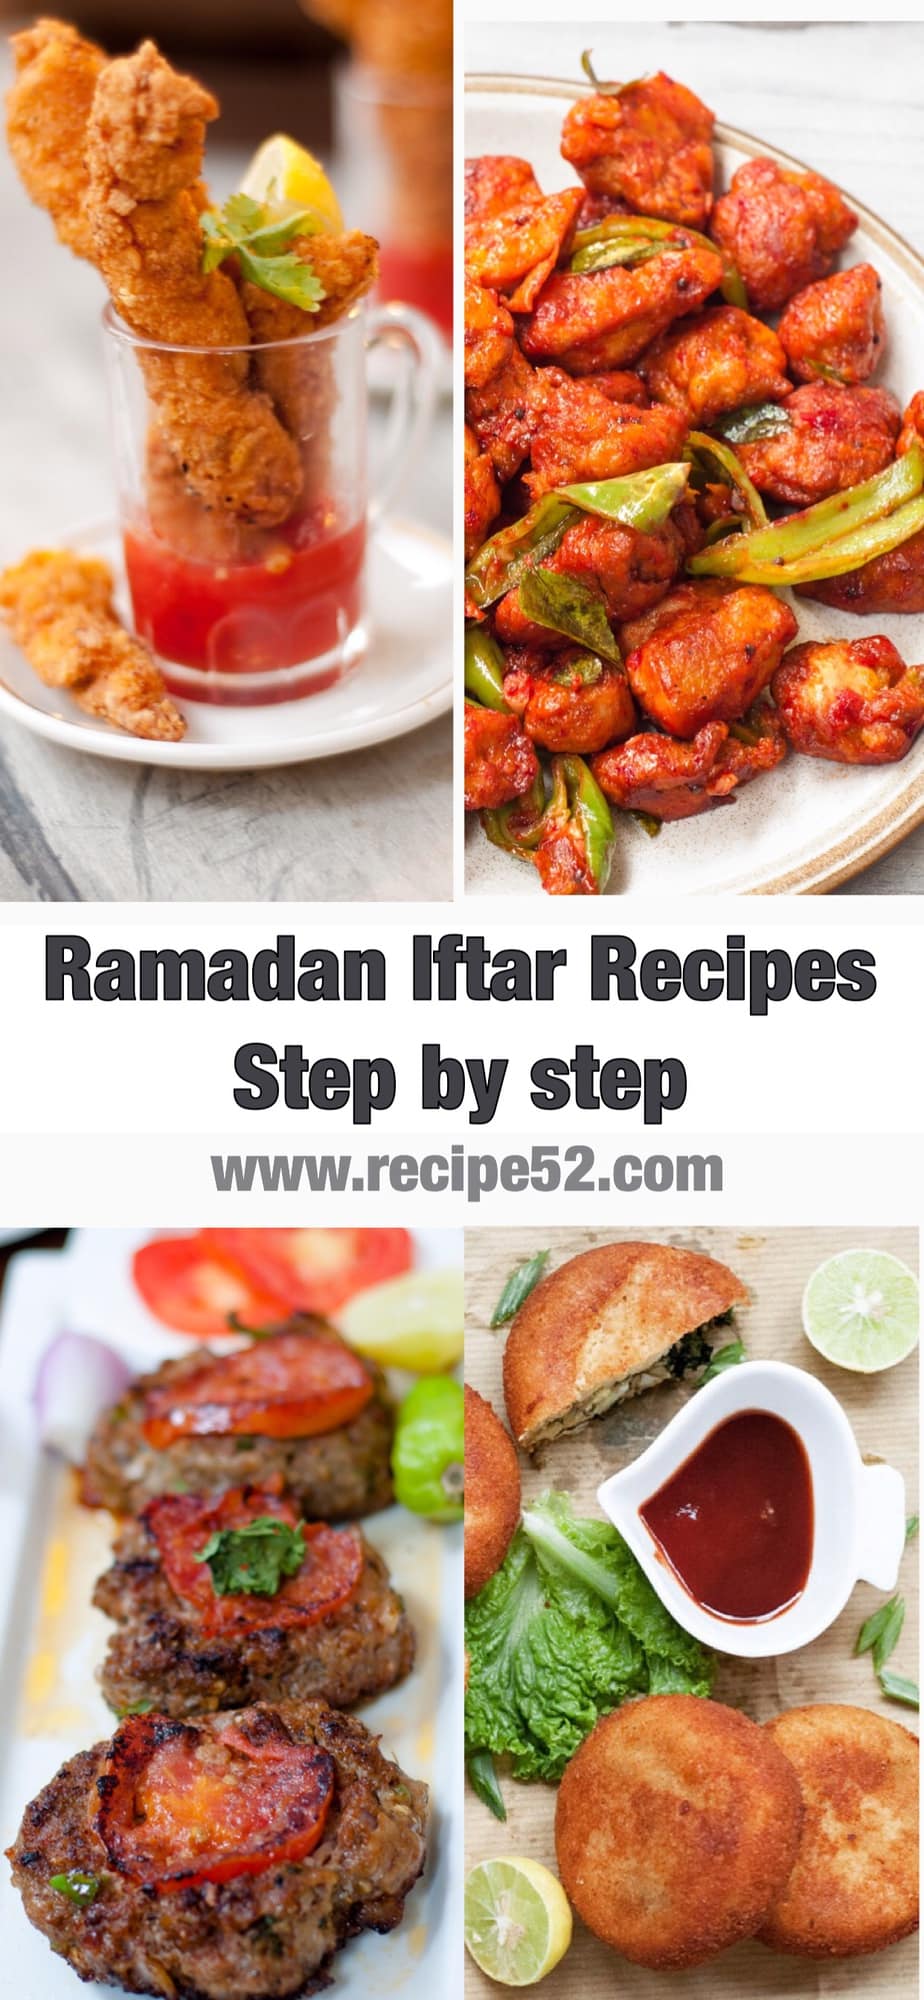 Ramadan Recipes, 50+ Iftar recipes - Recipe52.com